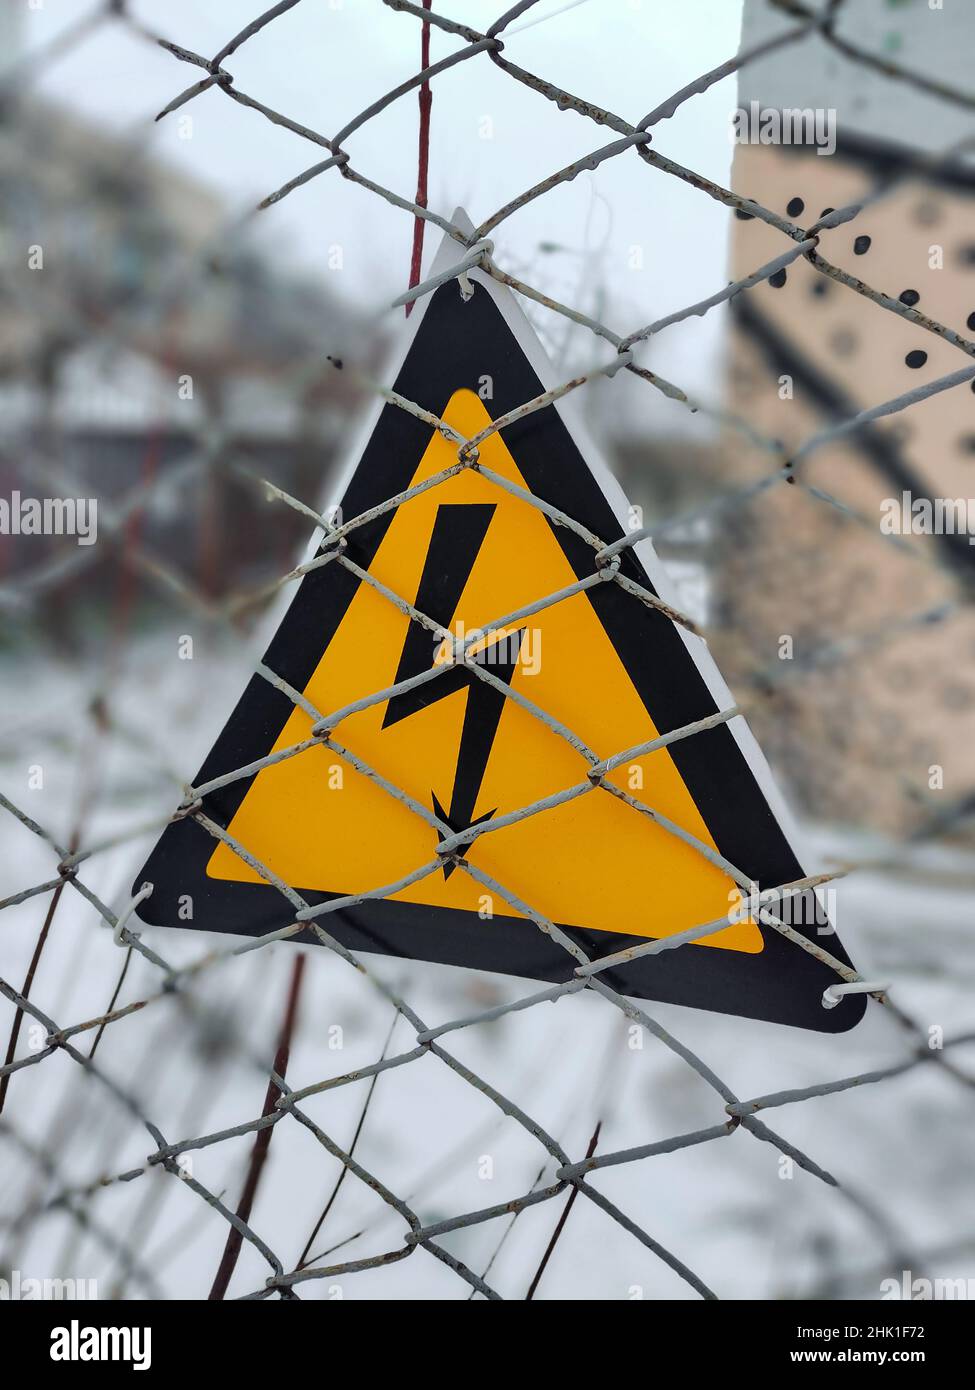 Ein dreieckiges Warnschild hängt an einem Drahtzaun über gefährliche hohe elektrische Spannung dahinter. Stockfoto